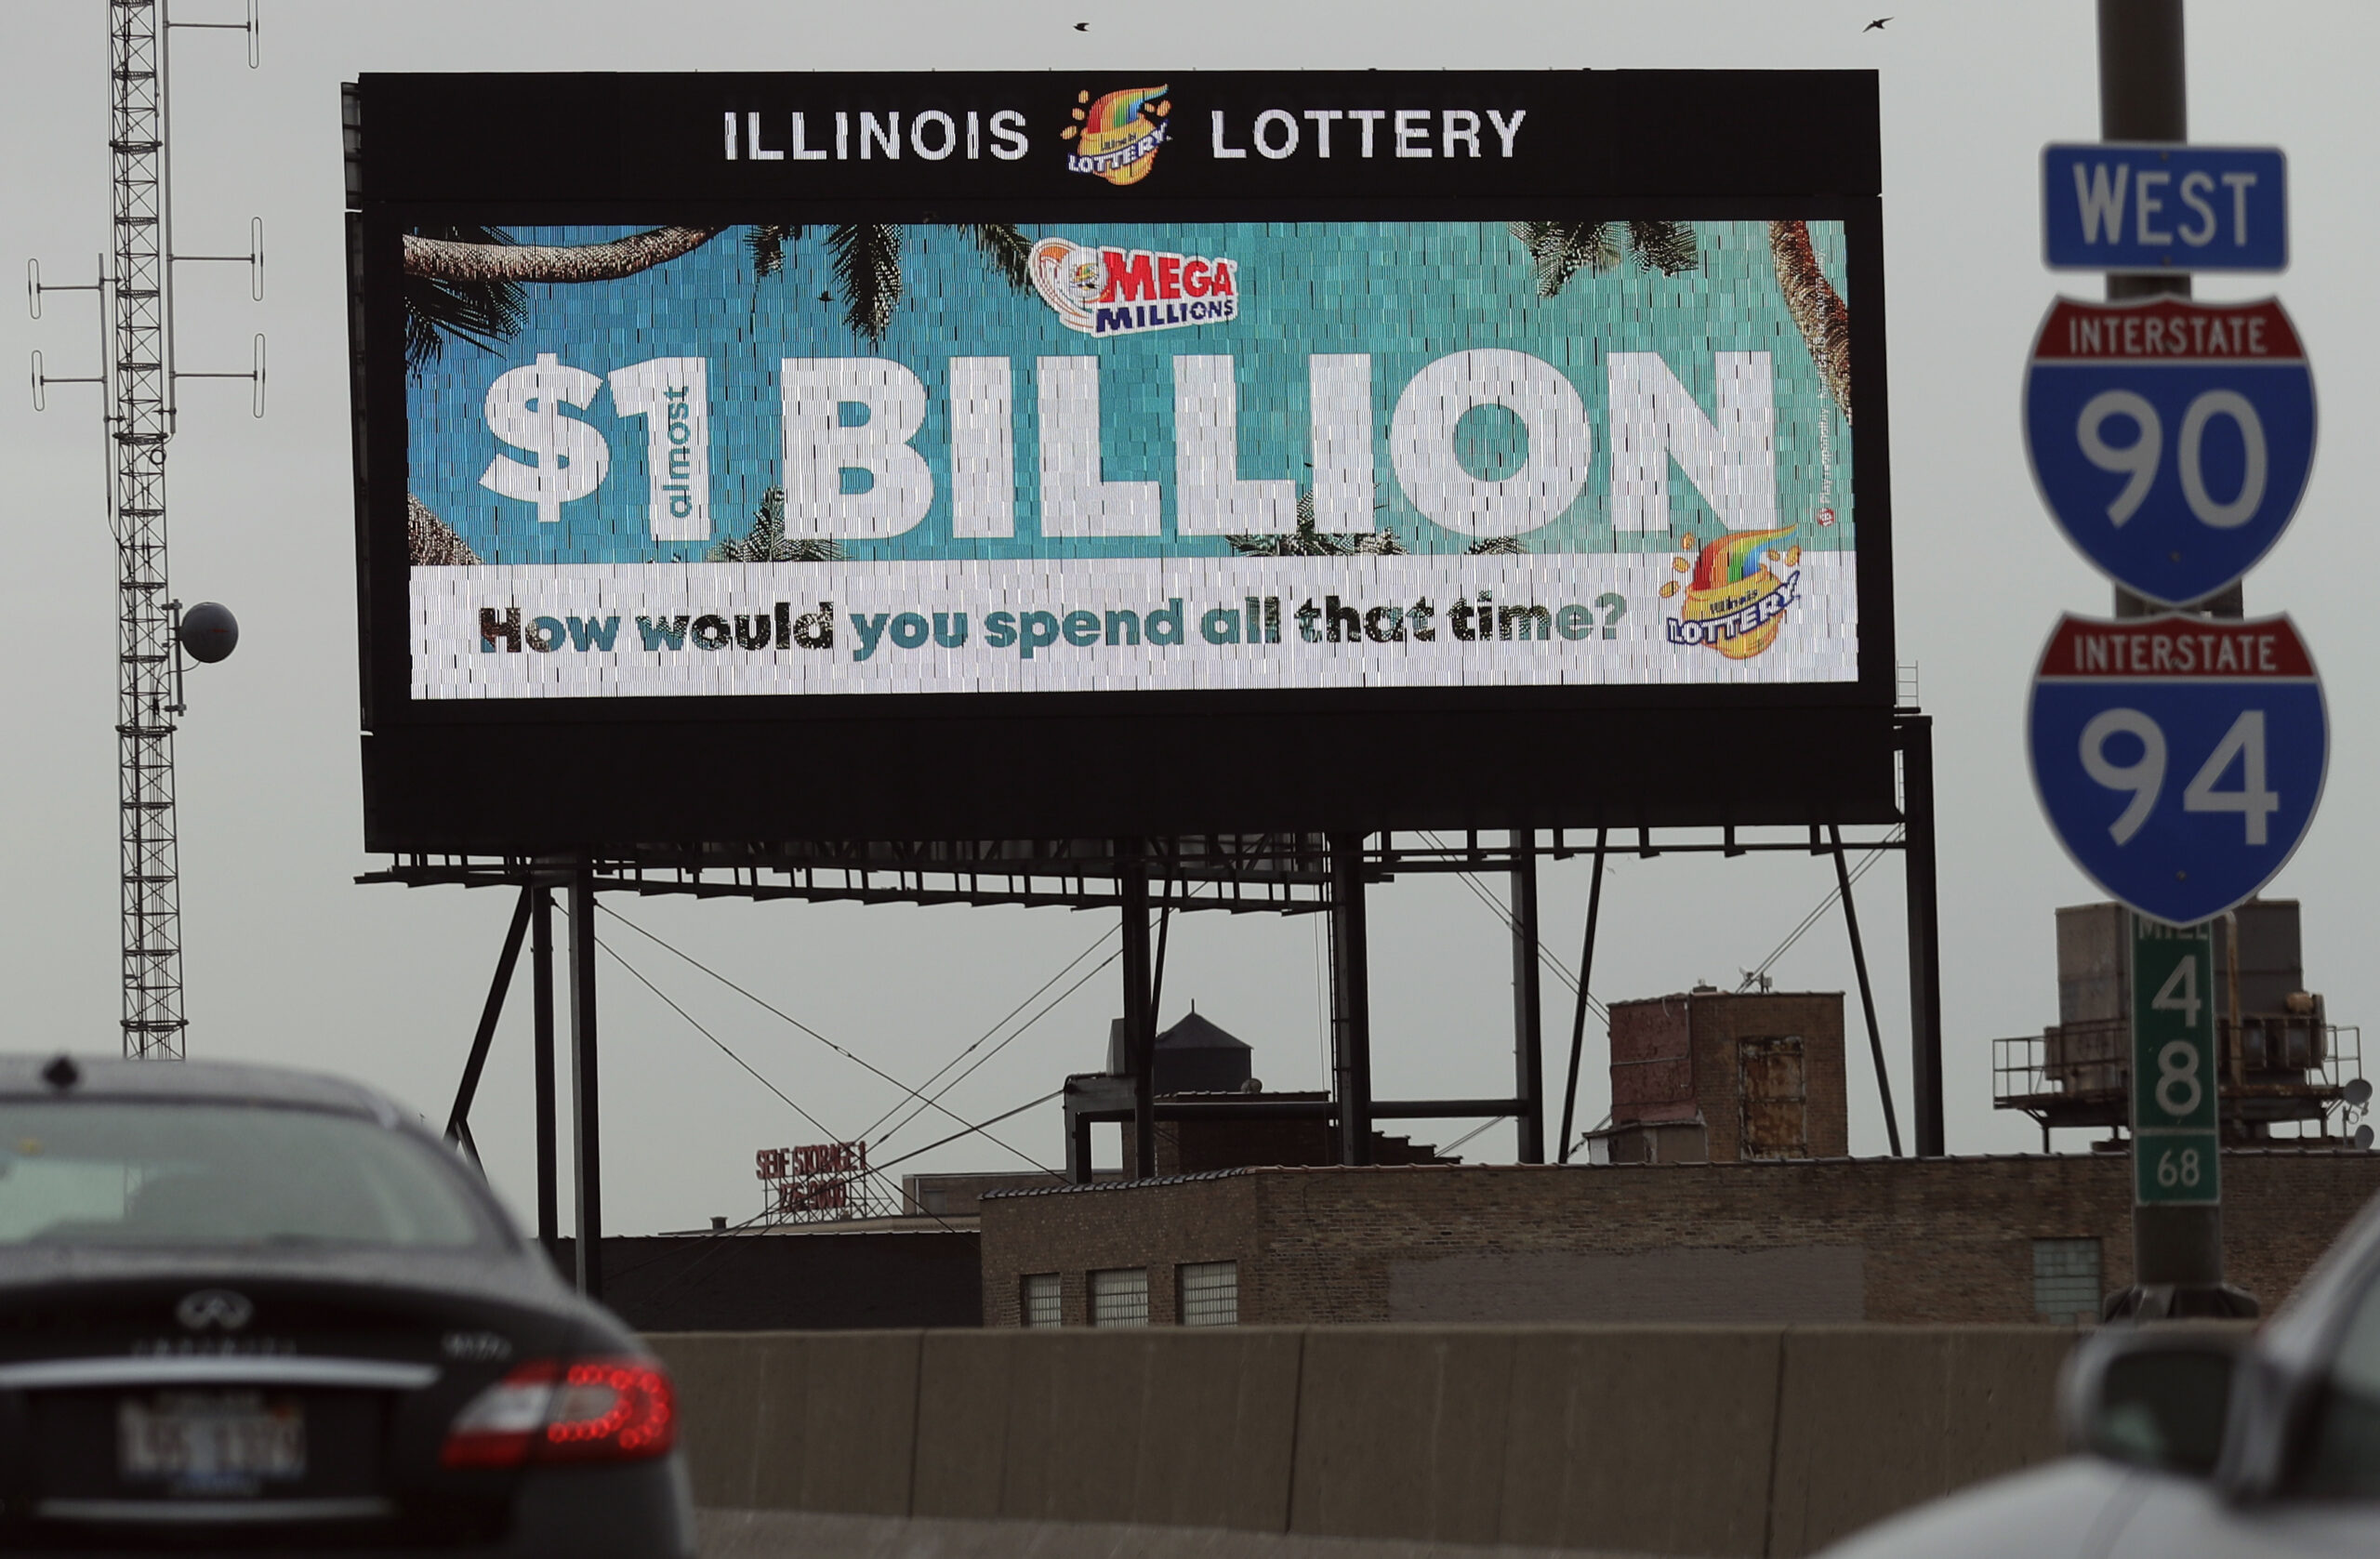 Ein Lotto-Spieler in den USA hat den 1,35 Milliarden Dollar schweren Lotto-Jackpot geknackt. (Symbolbild)